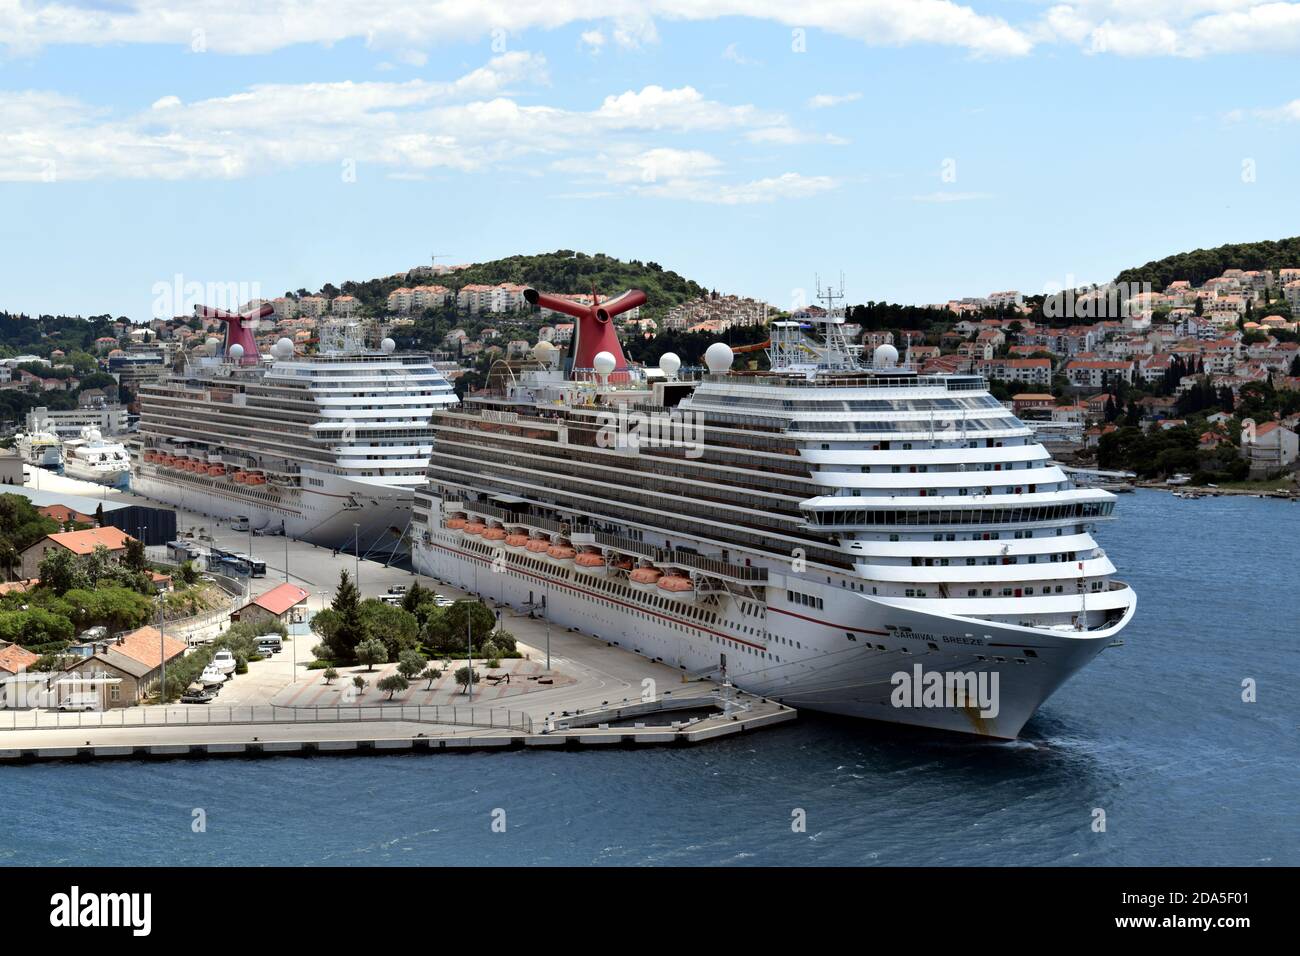 Cruceros Carnival, Carnival Breez y Carnival Magic desembarcaron la tripulación durante la crisis de COVID - puerto de Dubrovnik, Croacia, mayo de 2020 Foto de stock